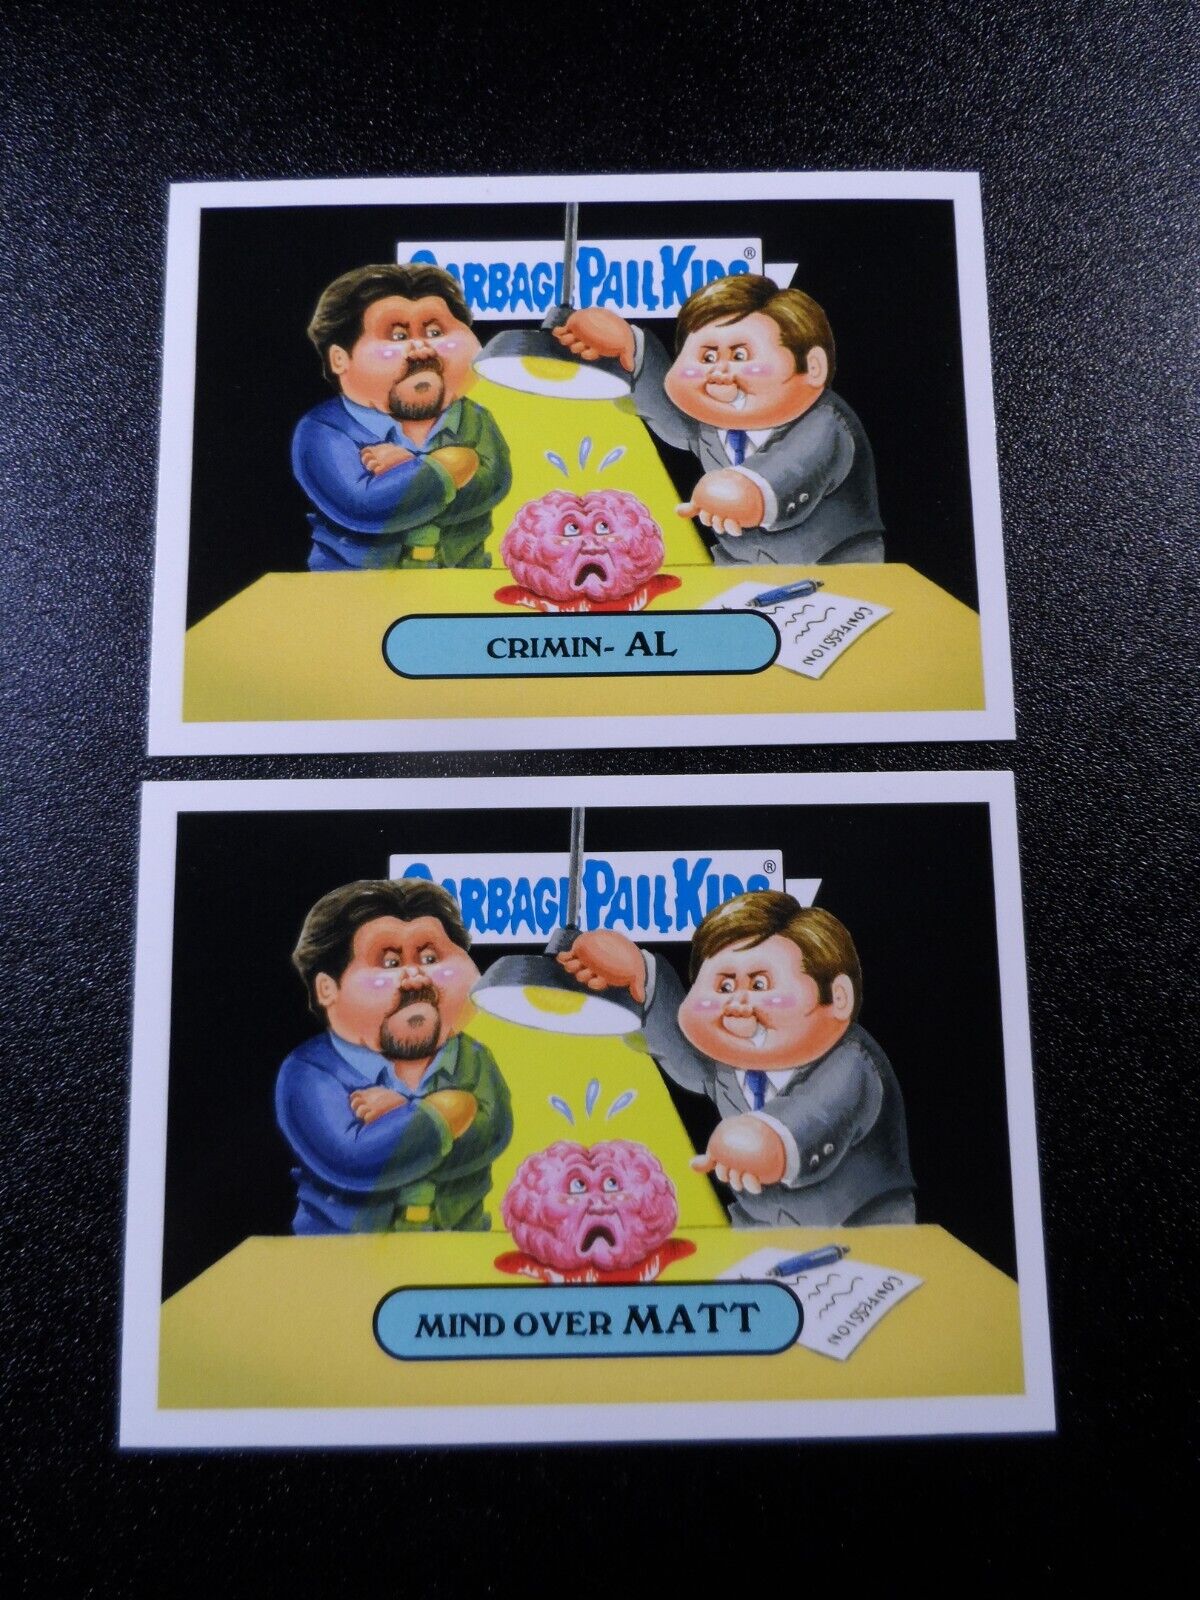 Criminal Minds Thomas Gibson Joe Mantegna Spoof Garbage Pail Kids 2 Card Set